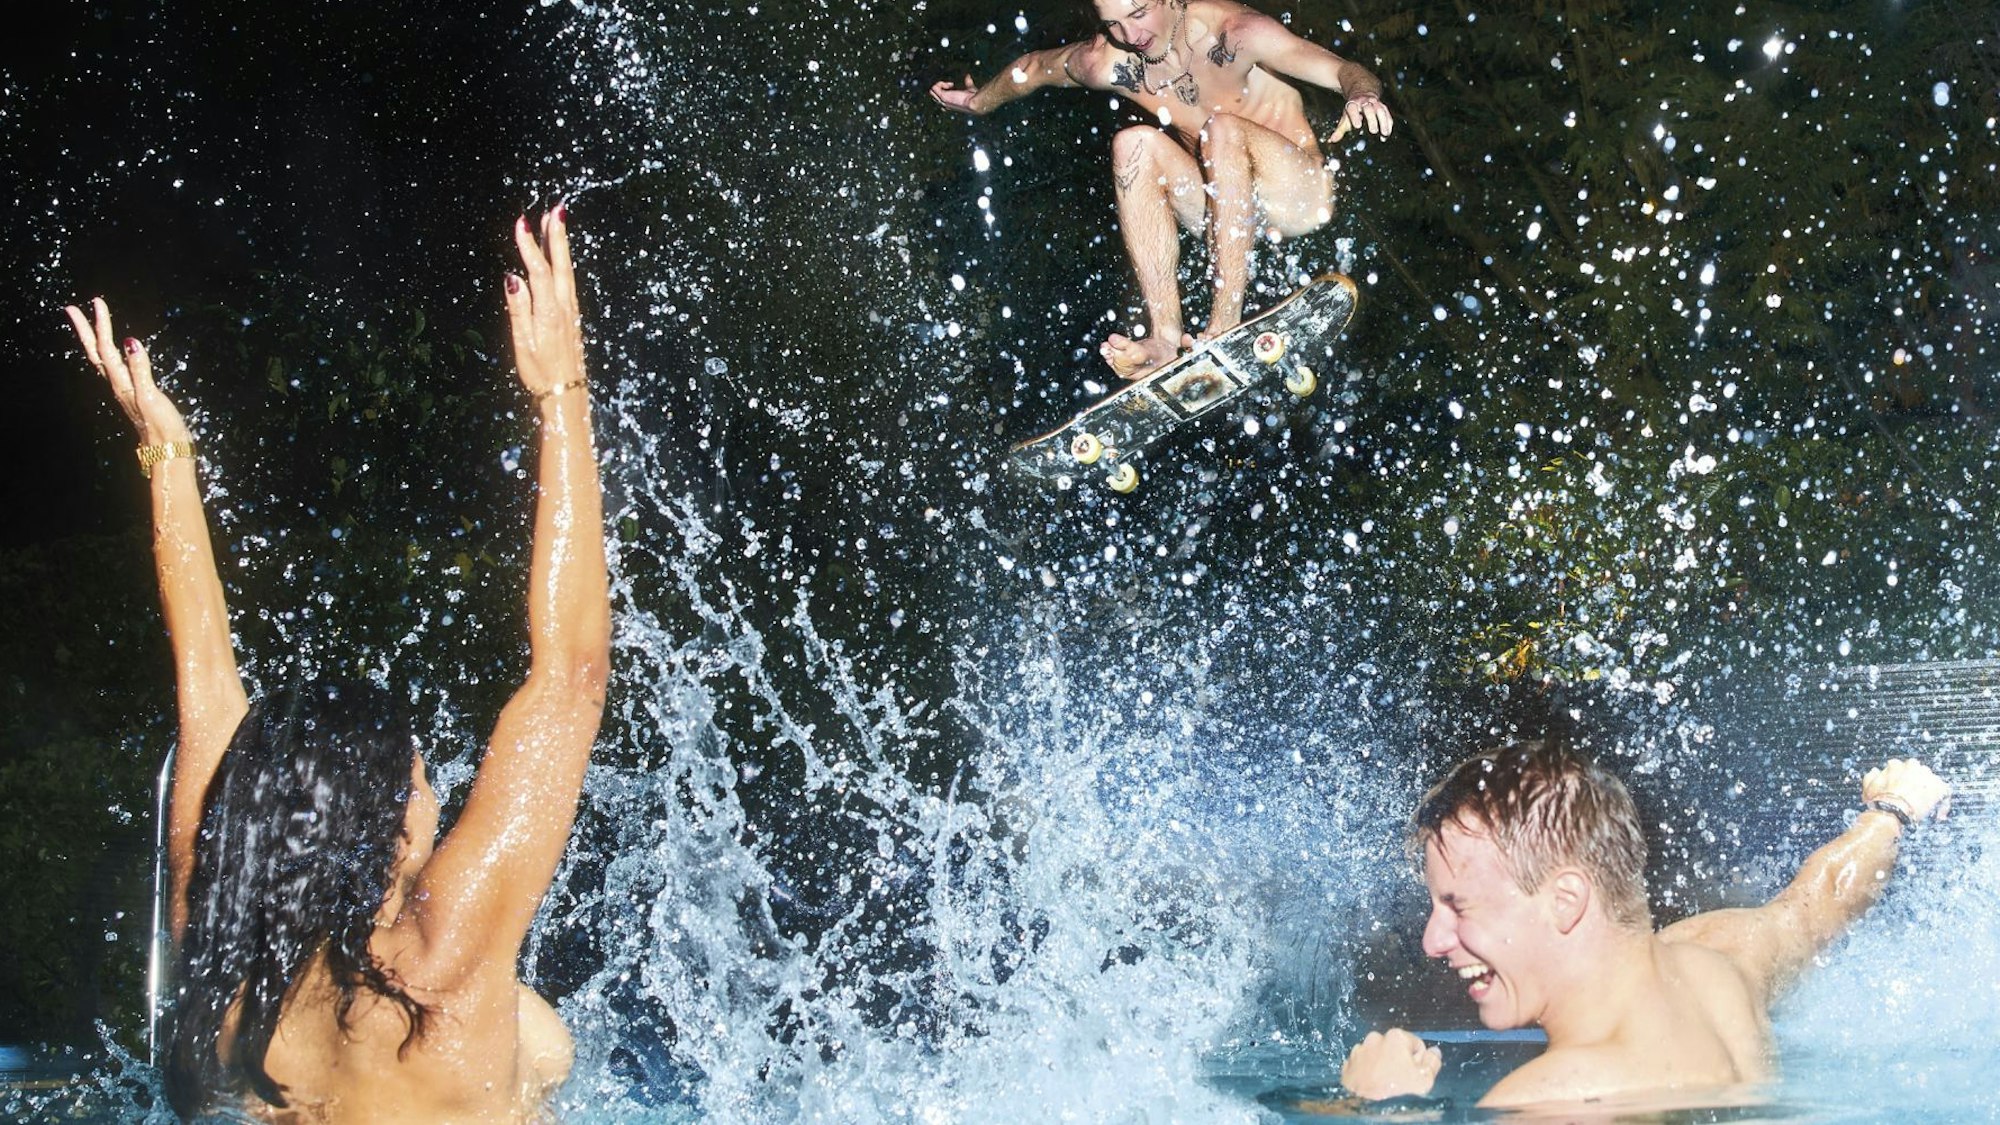 Werbung für Gaffels Fassbrause: Drei nackte Menschen in einem Swimming Pool.